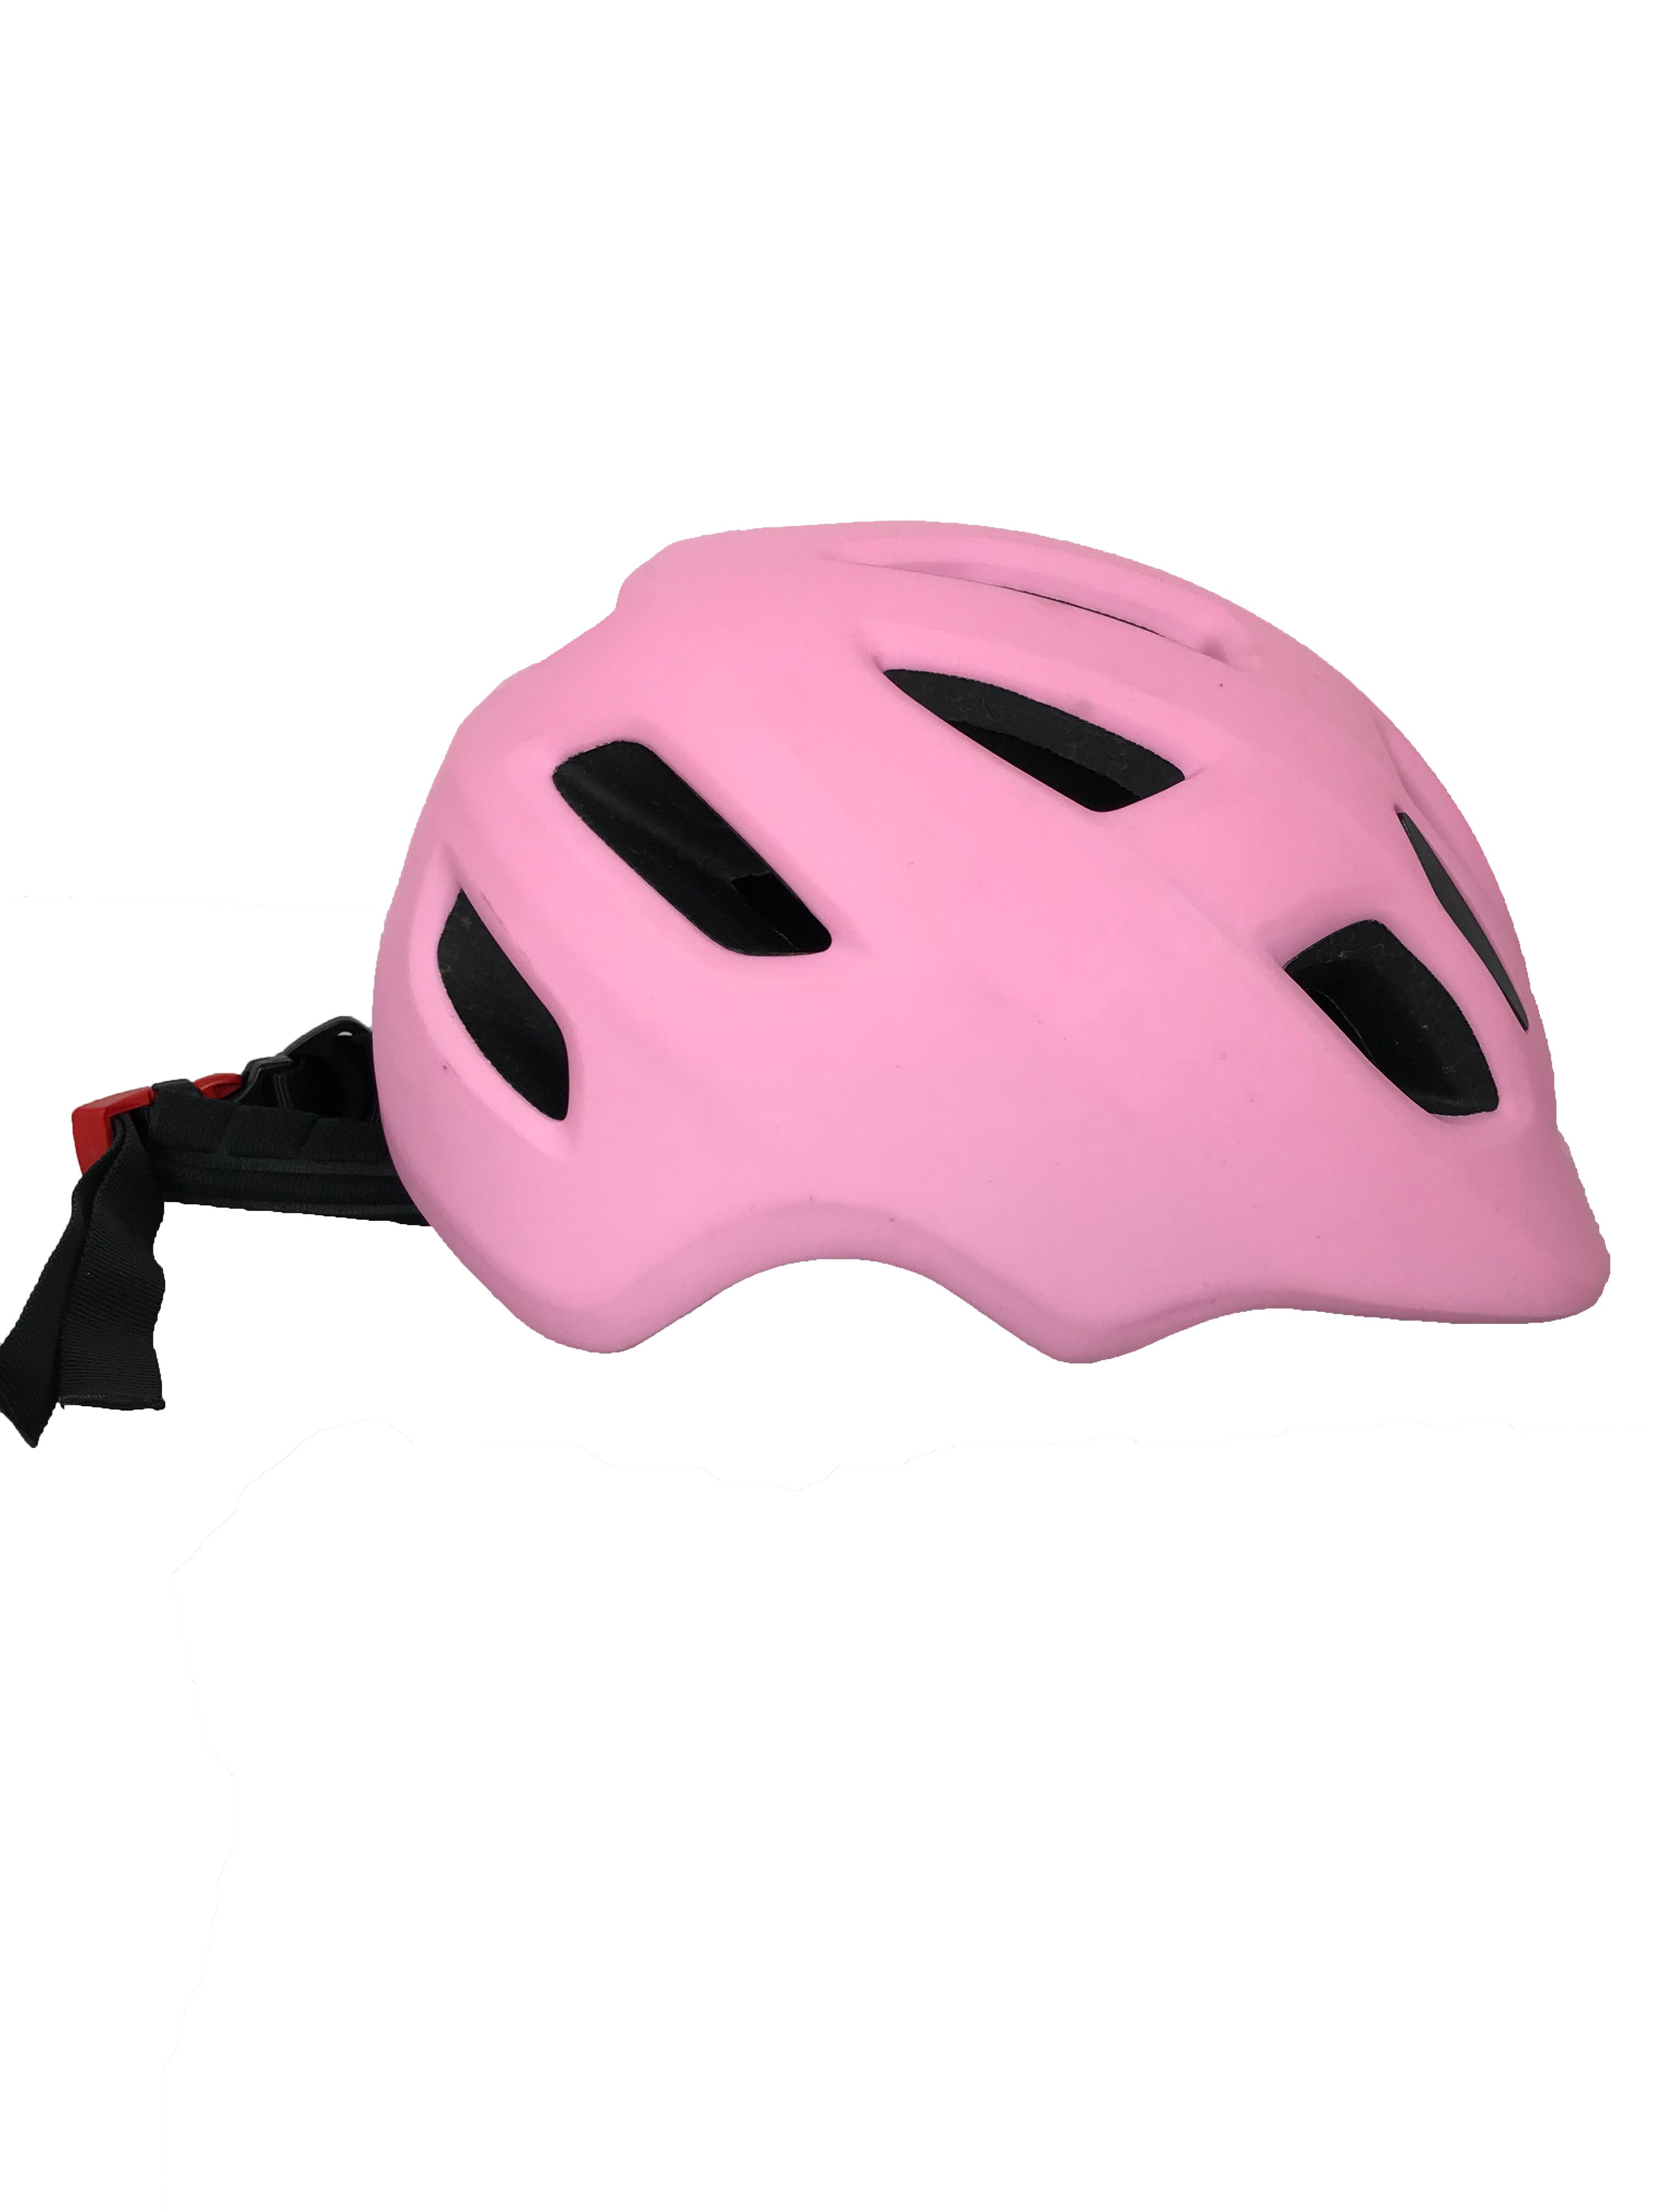 XJD Pink Adjustable Kid's Bike Helmet Size S